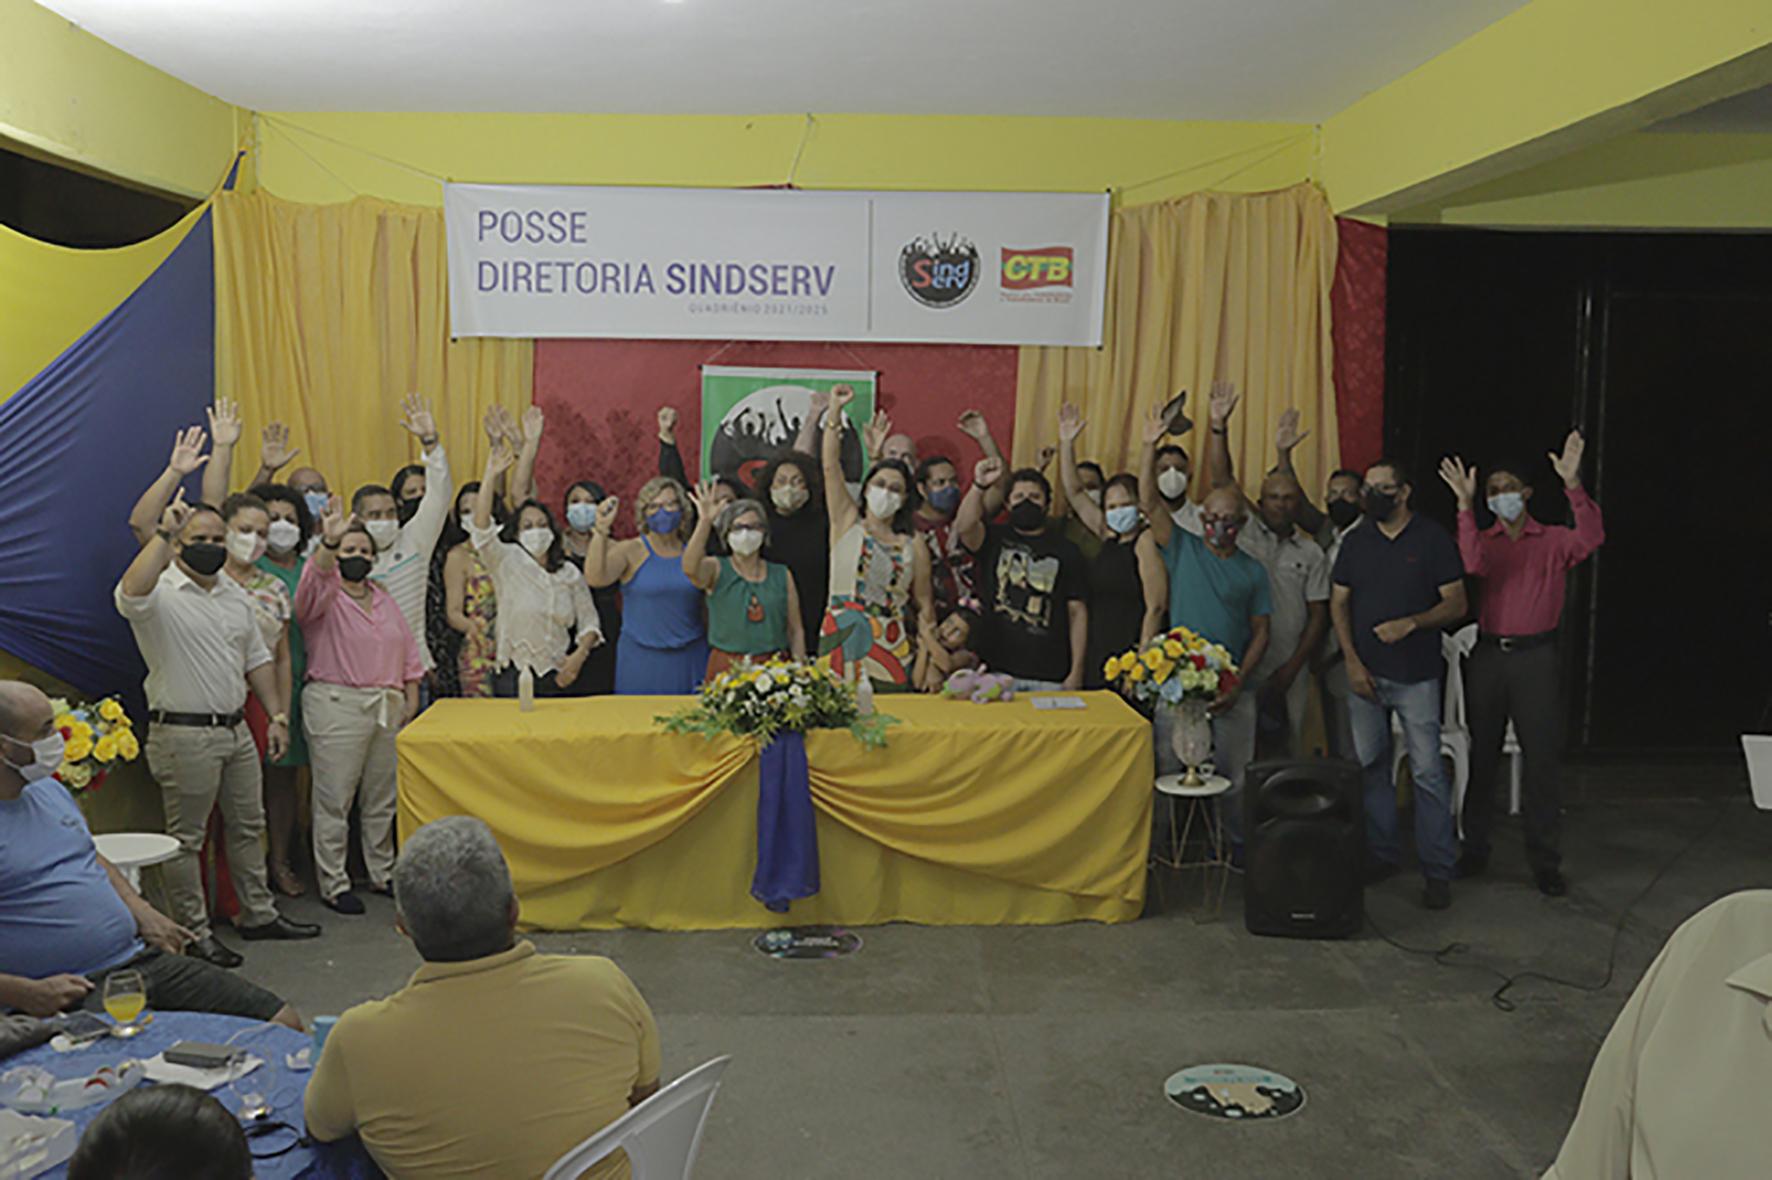 Nova diretoria e conselheiros tomam posse no Clube Homs, em São Paulo